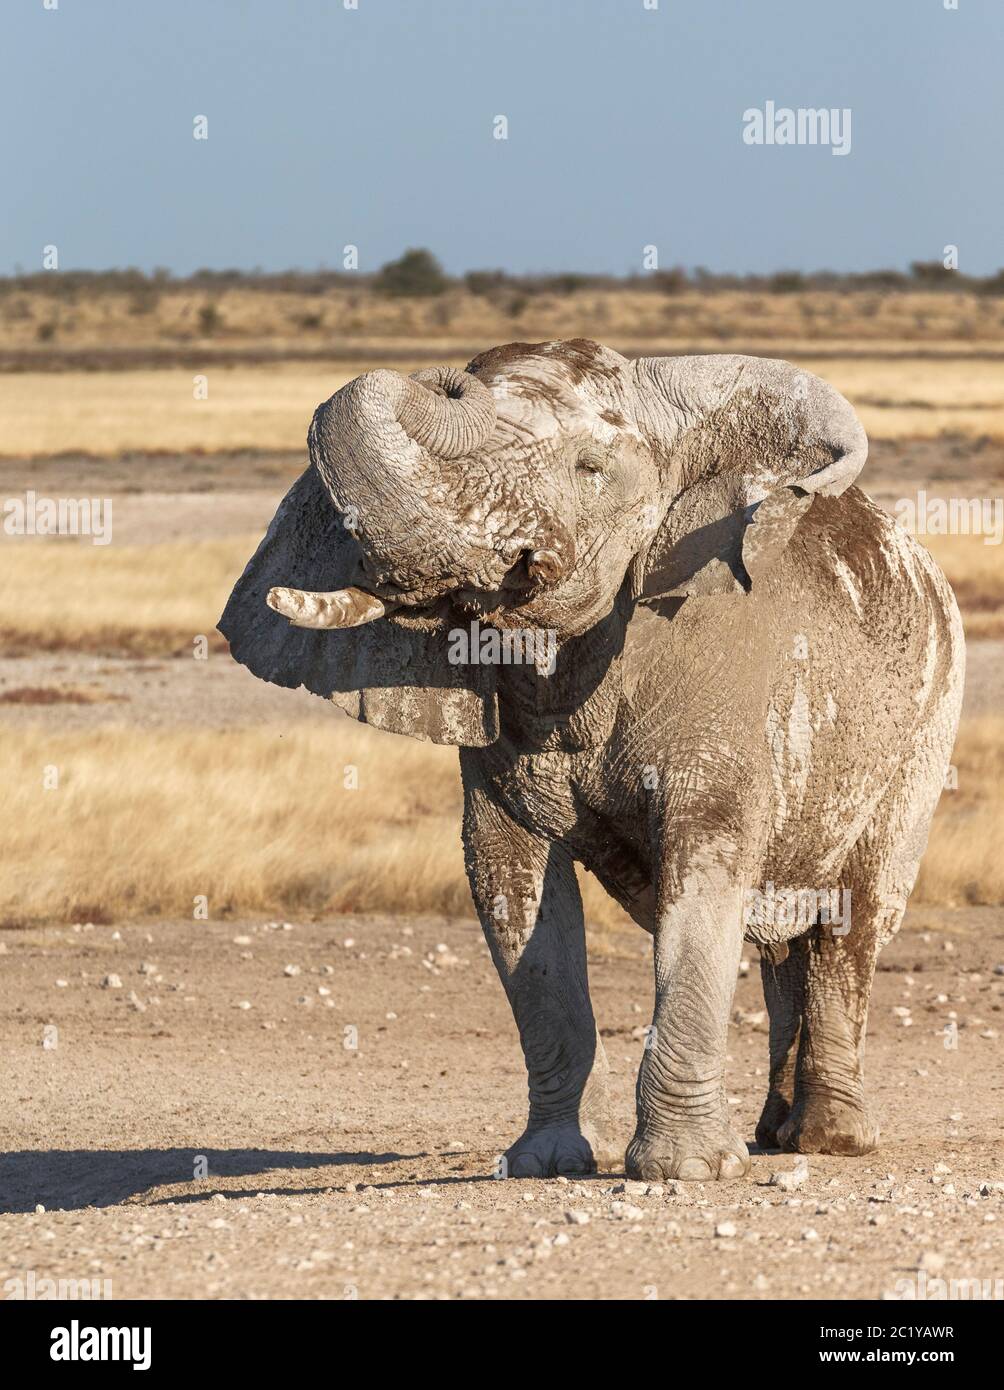 Afrikanischer Elefant, Loxodonta Africana, ein weißer Elefant mit ausgebreiteten Ohren, und der Rüssel rollte sich über den Kopf. Der Bulle hat große Stoßzähne. Stockfoto